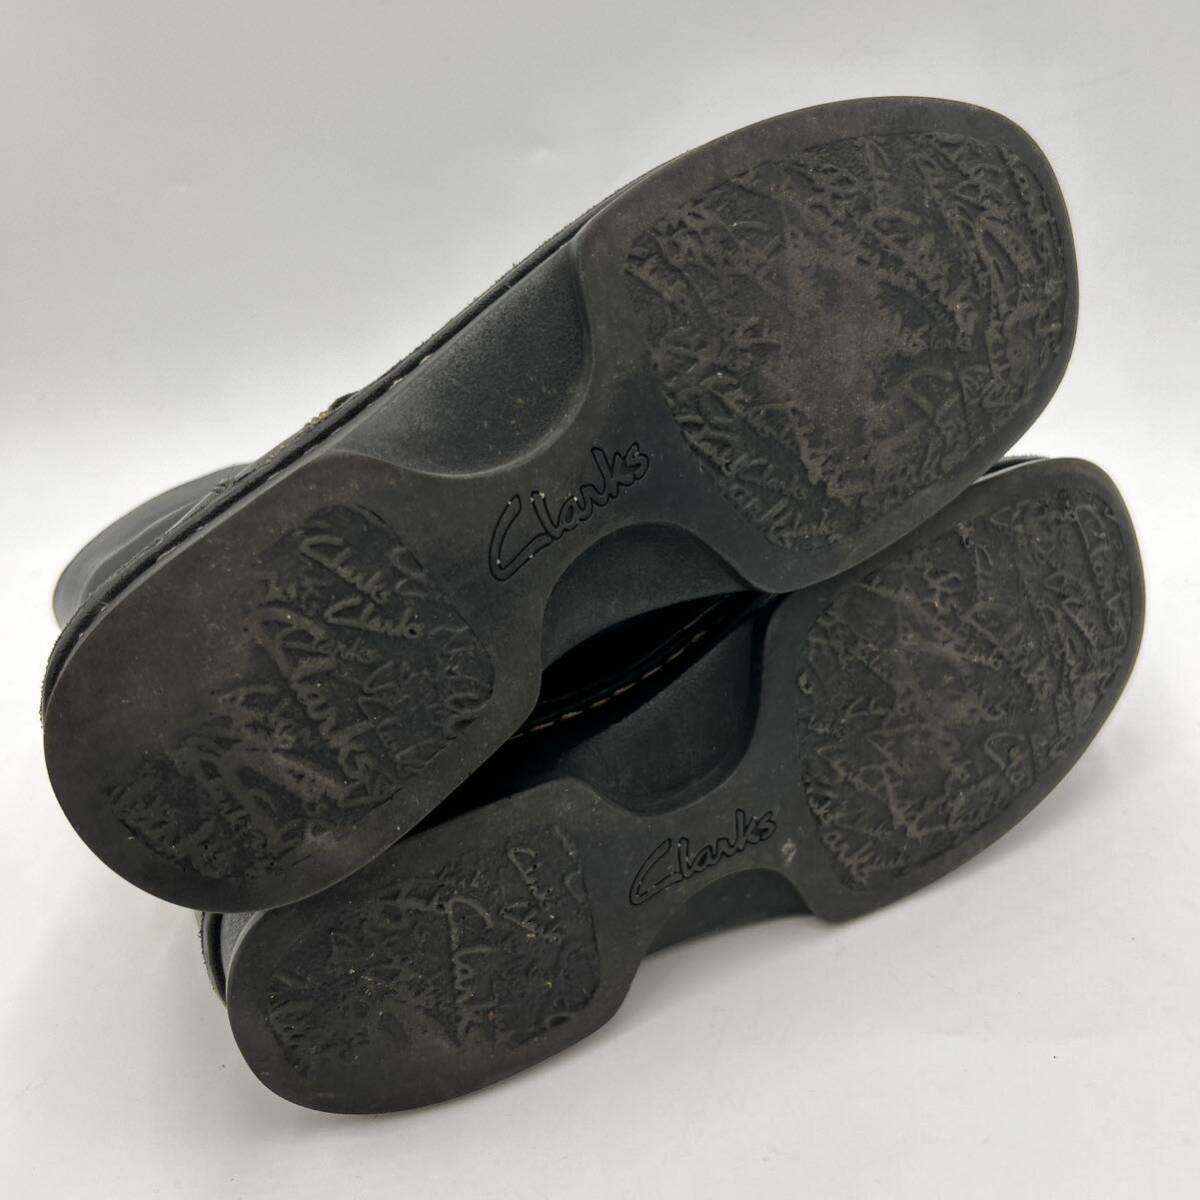 B ■ 極上レザー使用 '履き心地抜群' Clarks クラークス 本革 LEATHER ハイカット ブーツ UK4.5 23.5cm レディース 婦人靴 シューズ 黒系の画像6